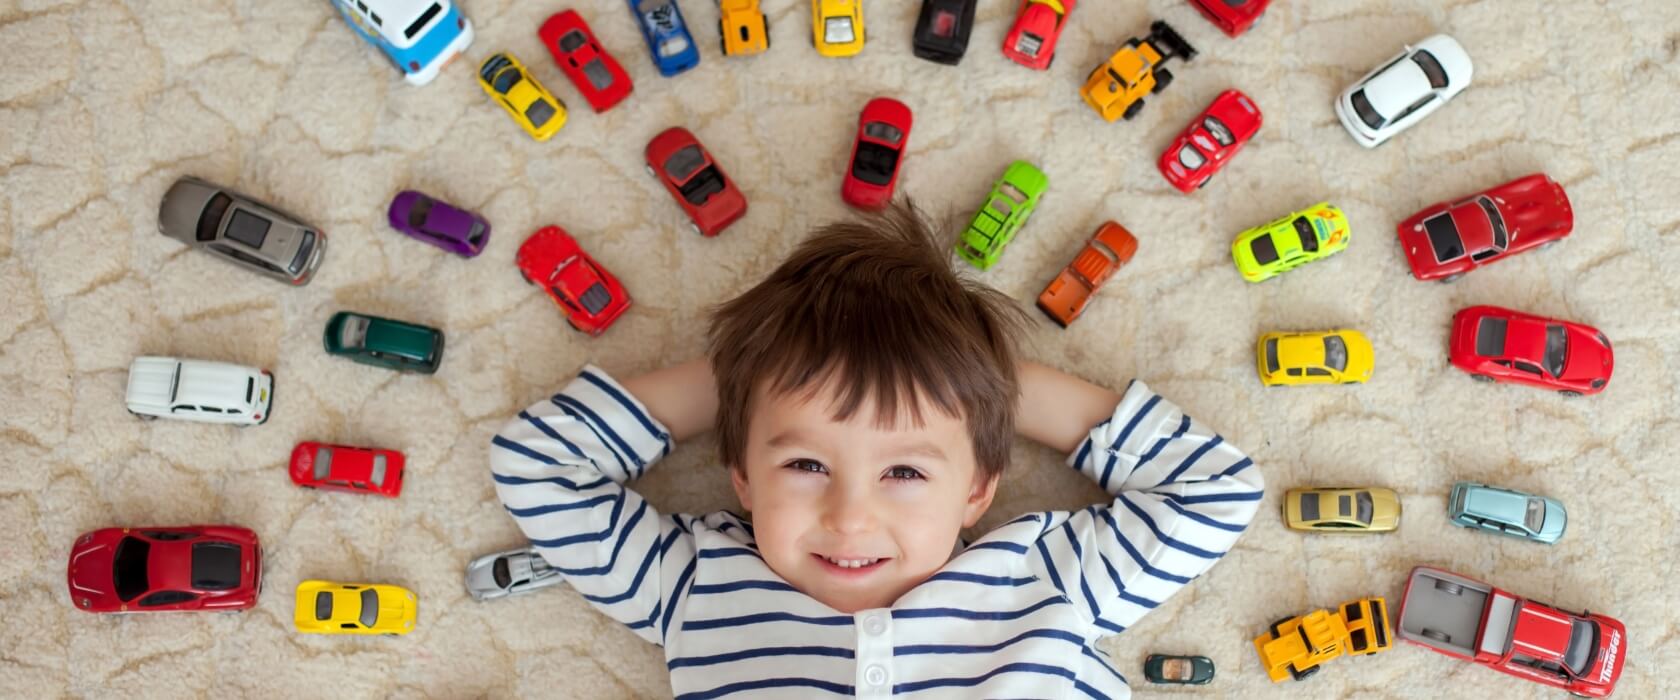 Junge liegt in vielen Spielzeugautos